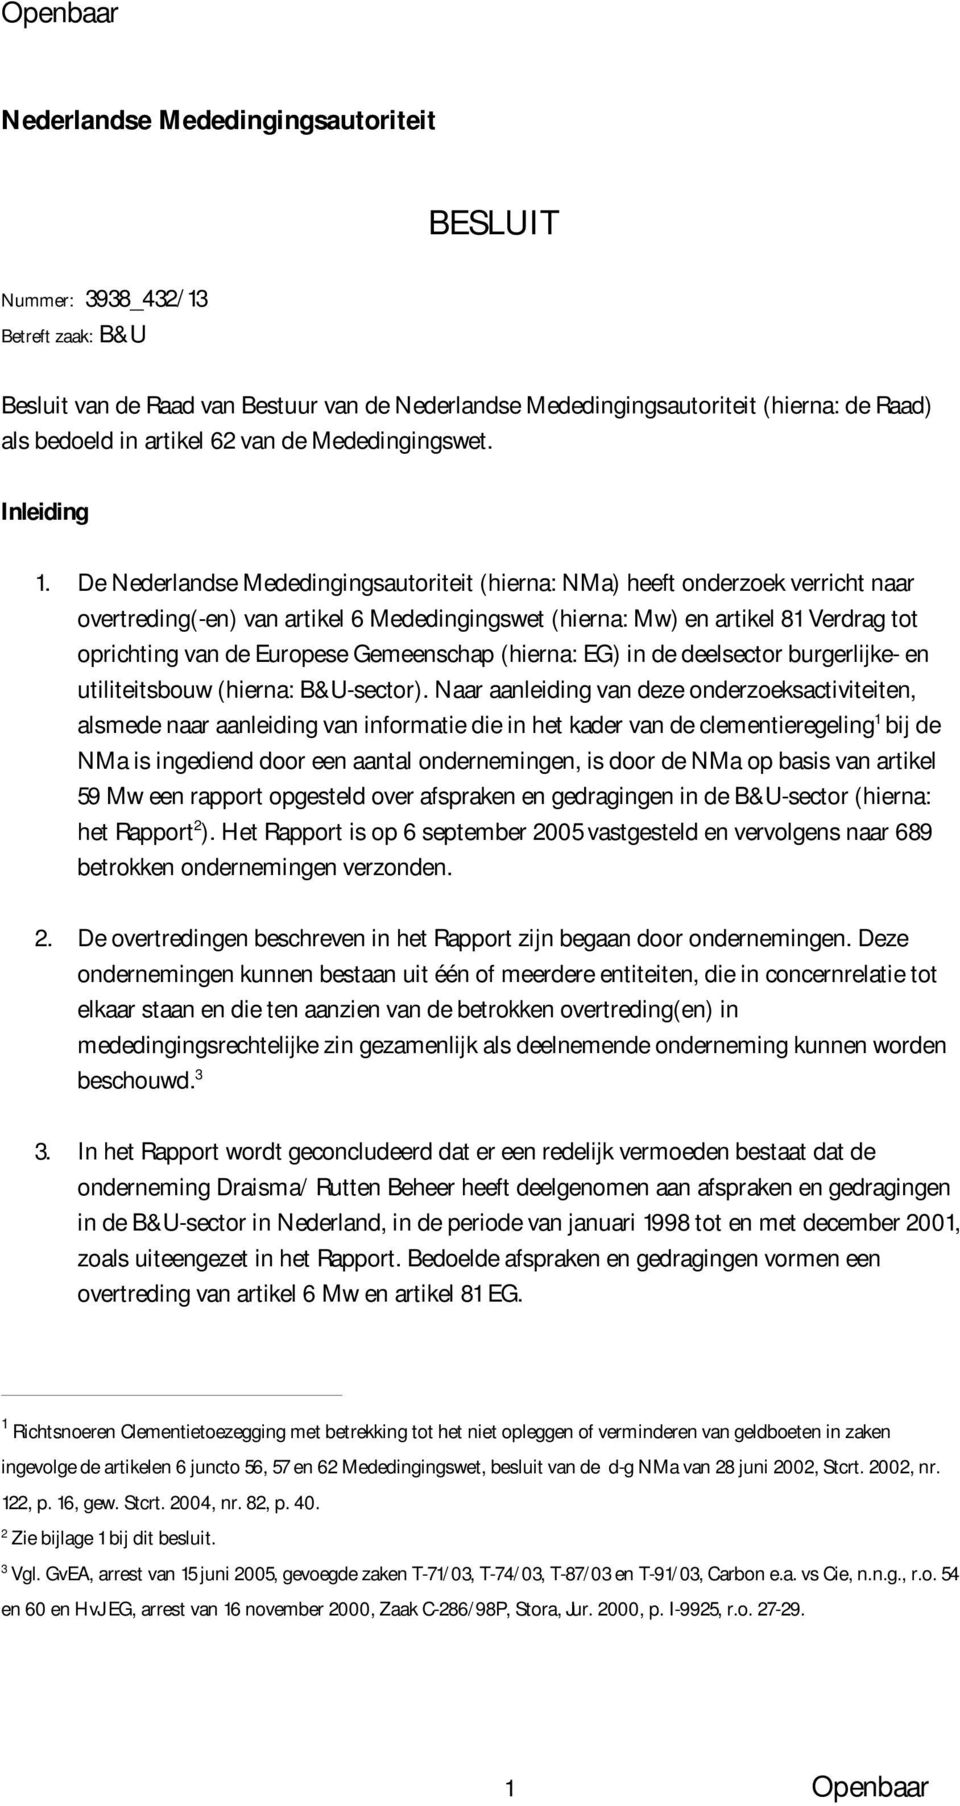 De Nederlandse Mededingingsautoriteit (hierna: NMa) heeft onderzoek verricht naar overtreding(-en) van artikel 6 Mededingingswet (hierna: Mw) en artikel 81 Verdrag tot oprichting van de Europese